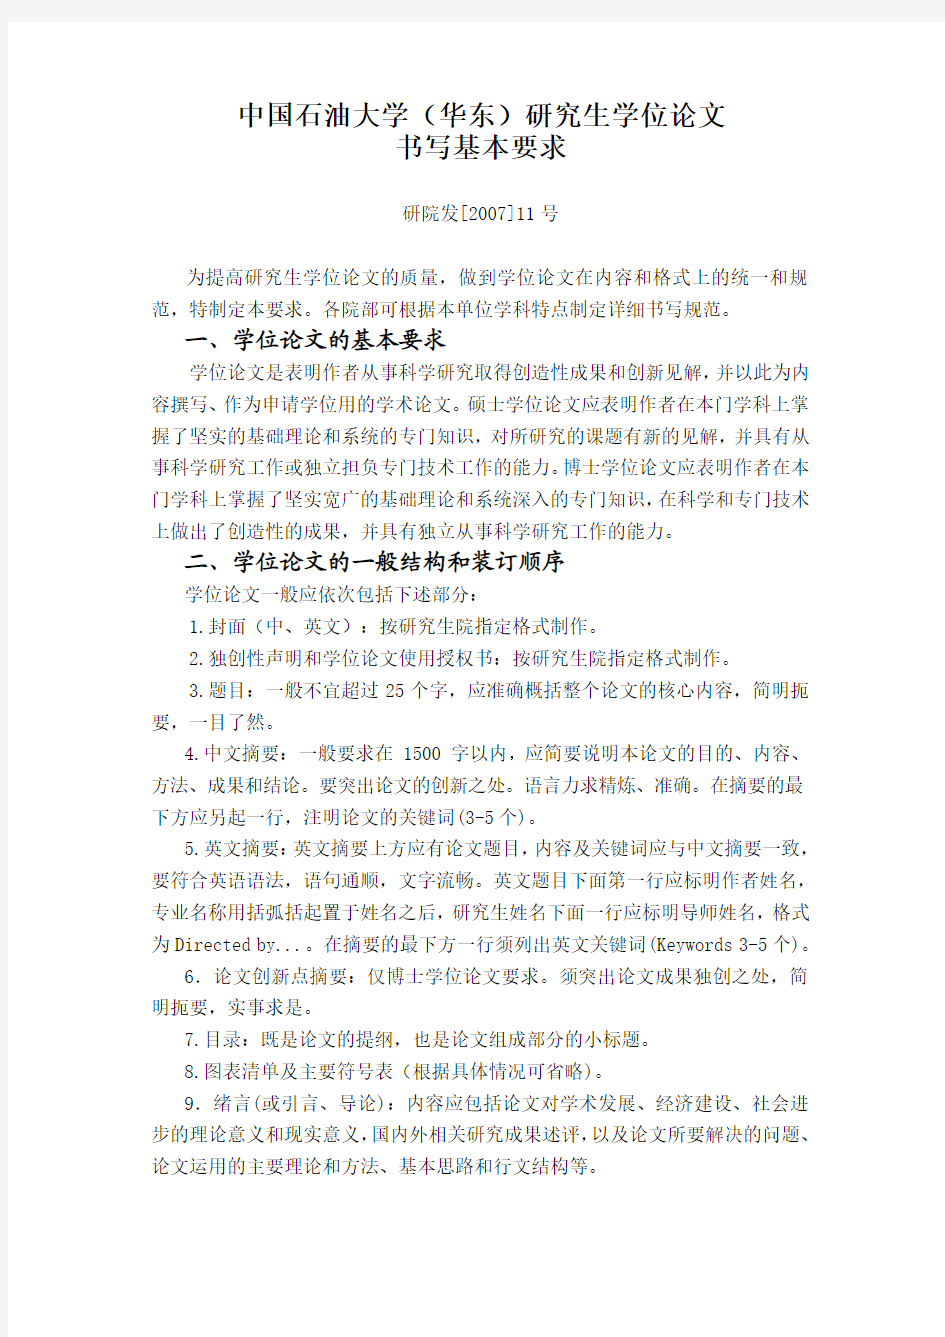 中国石油大学(华东)研究生学位论文书写基本要求